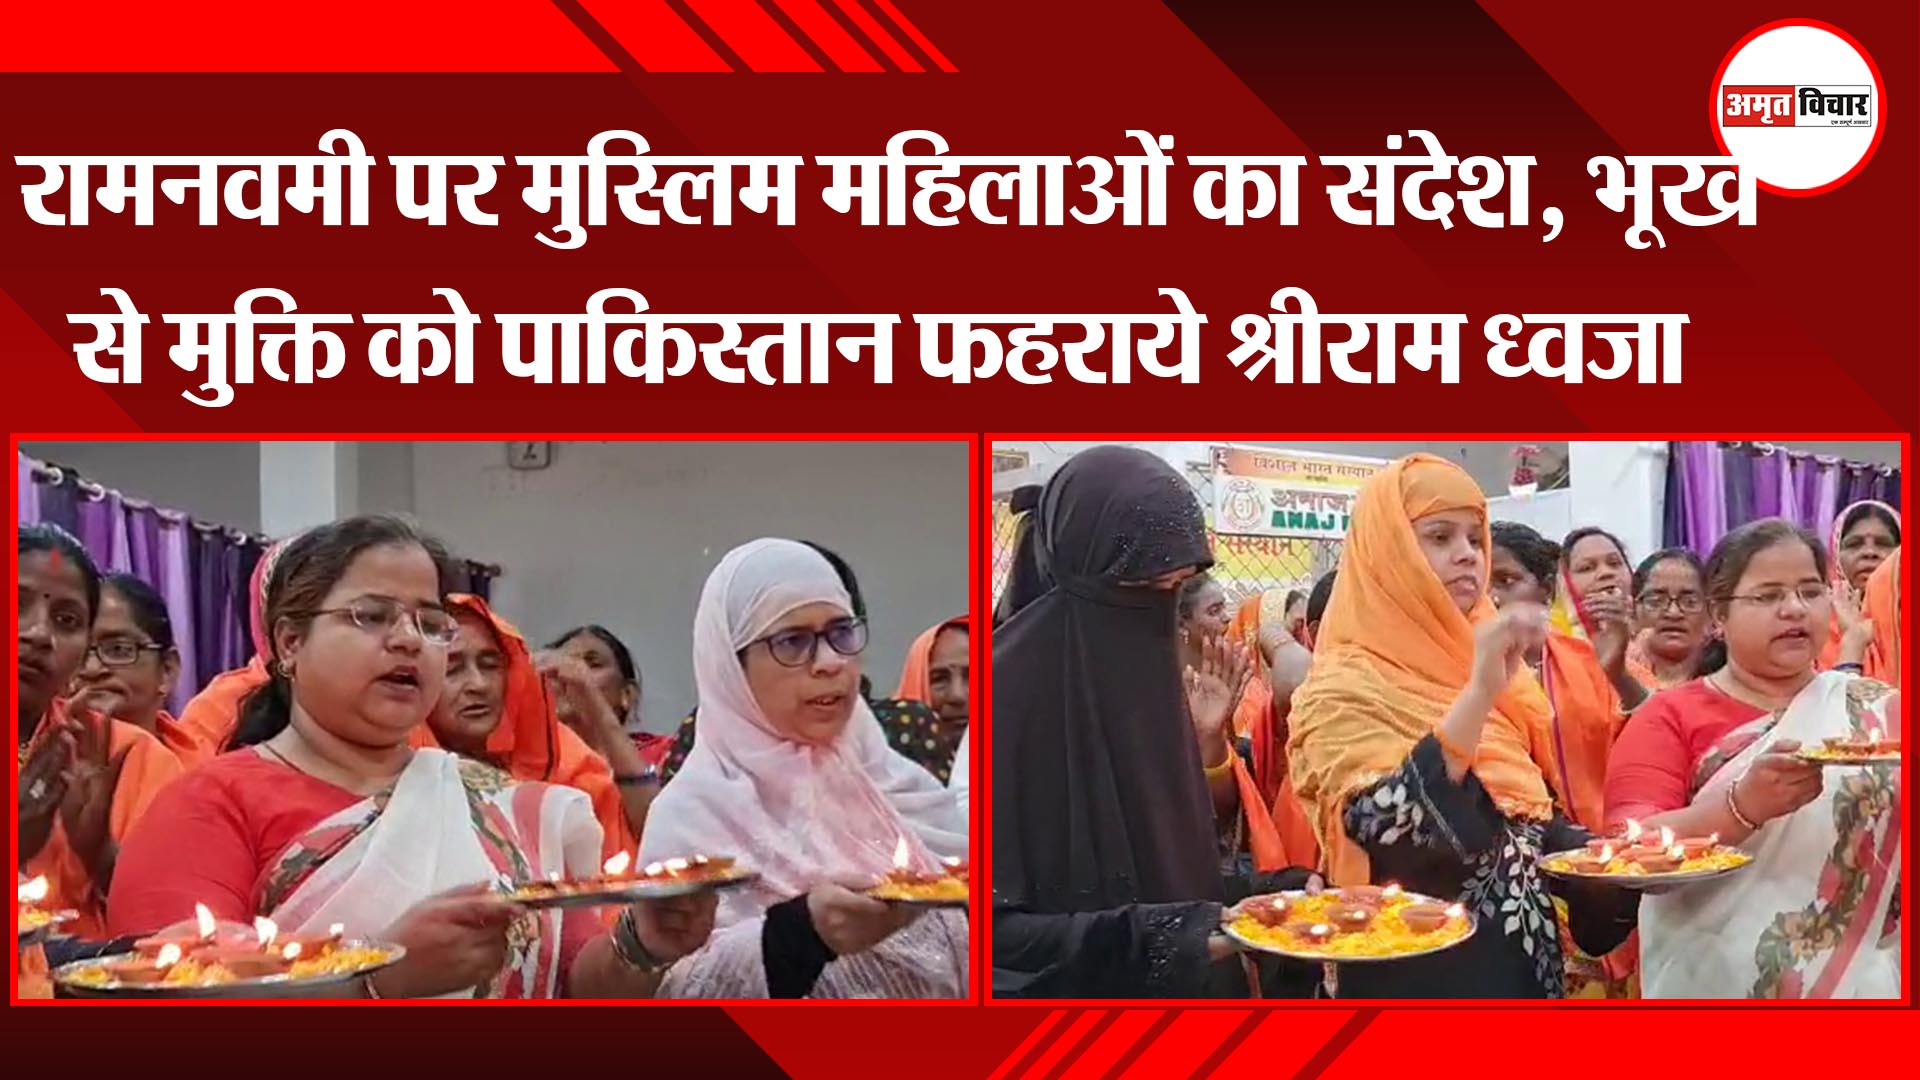 वाराणसी: रामनवमी पर मुस्लिम महिलाओं का संदेश, भूख से मुक्ति को पाकिस्तान फहराये श्रीराम ध्वजा